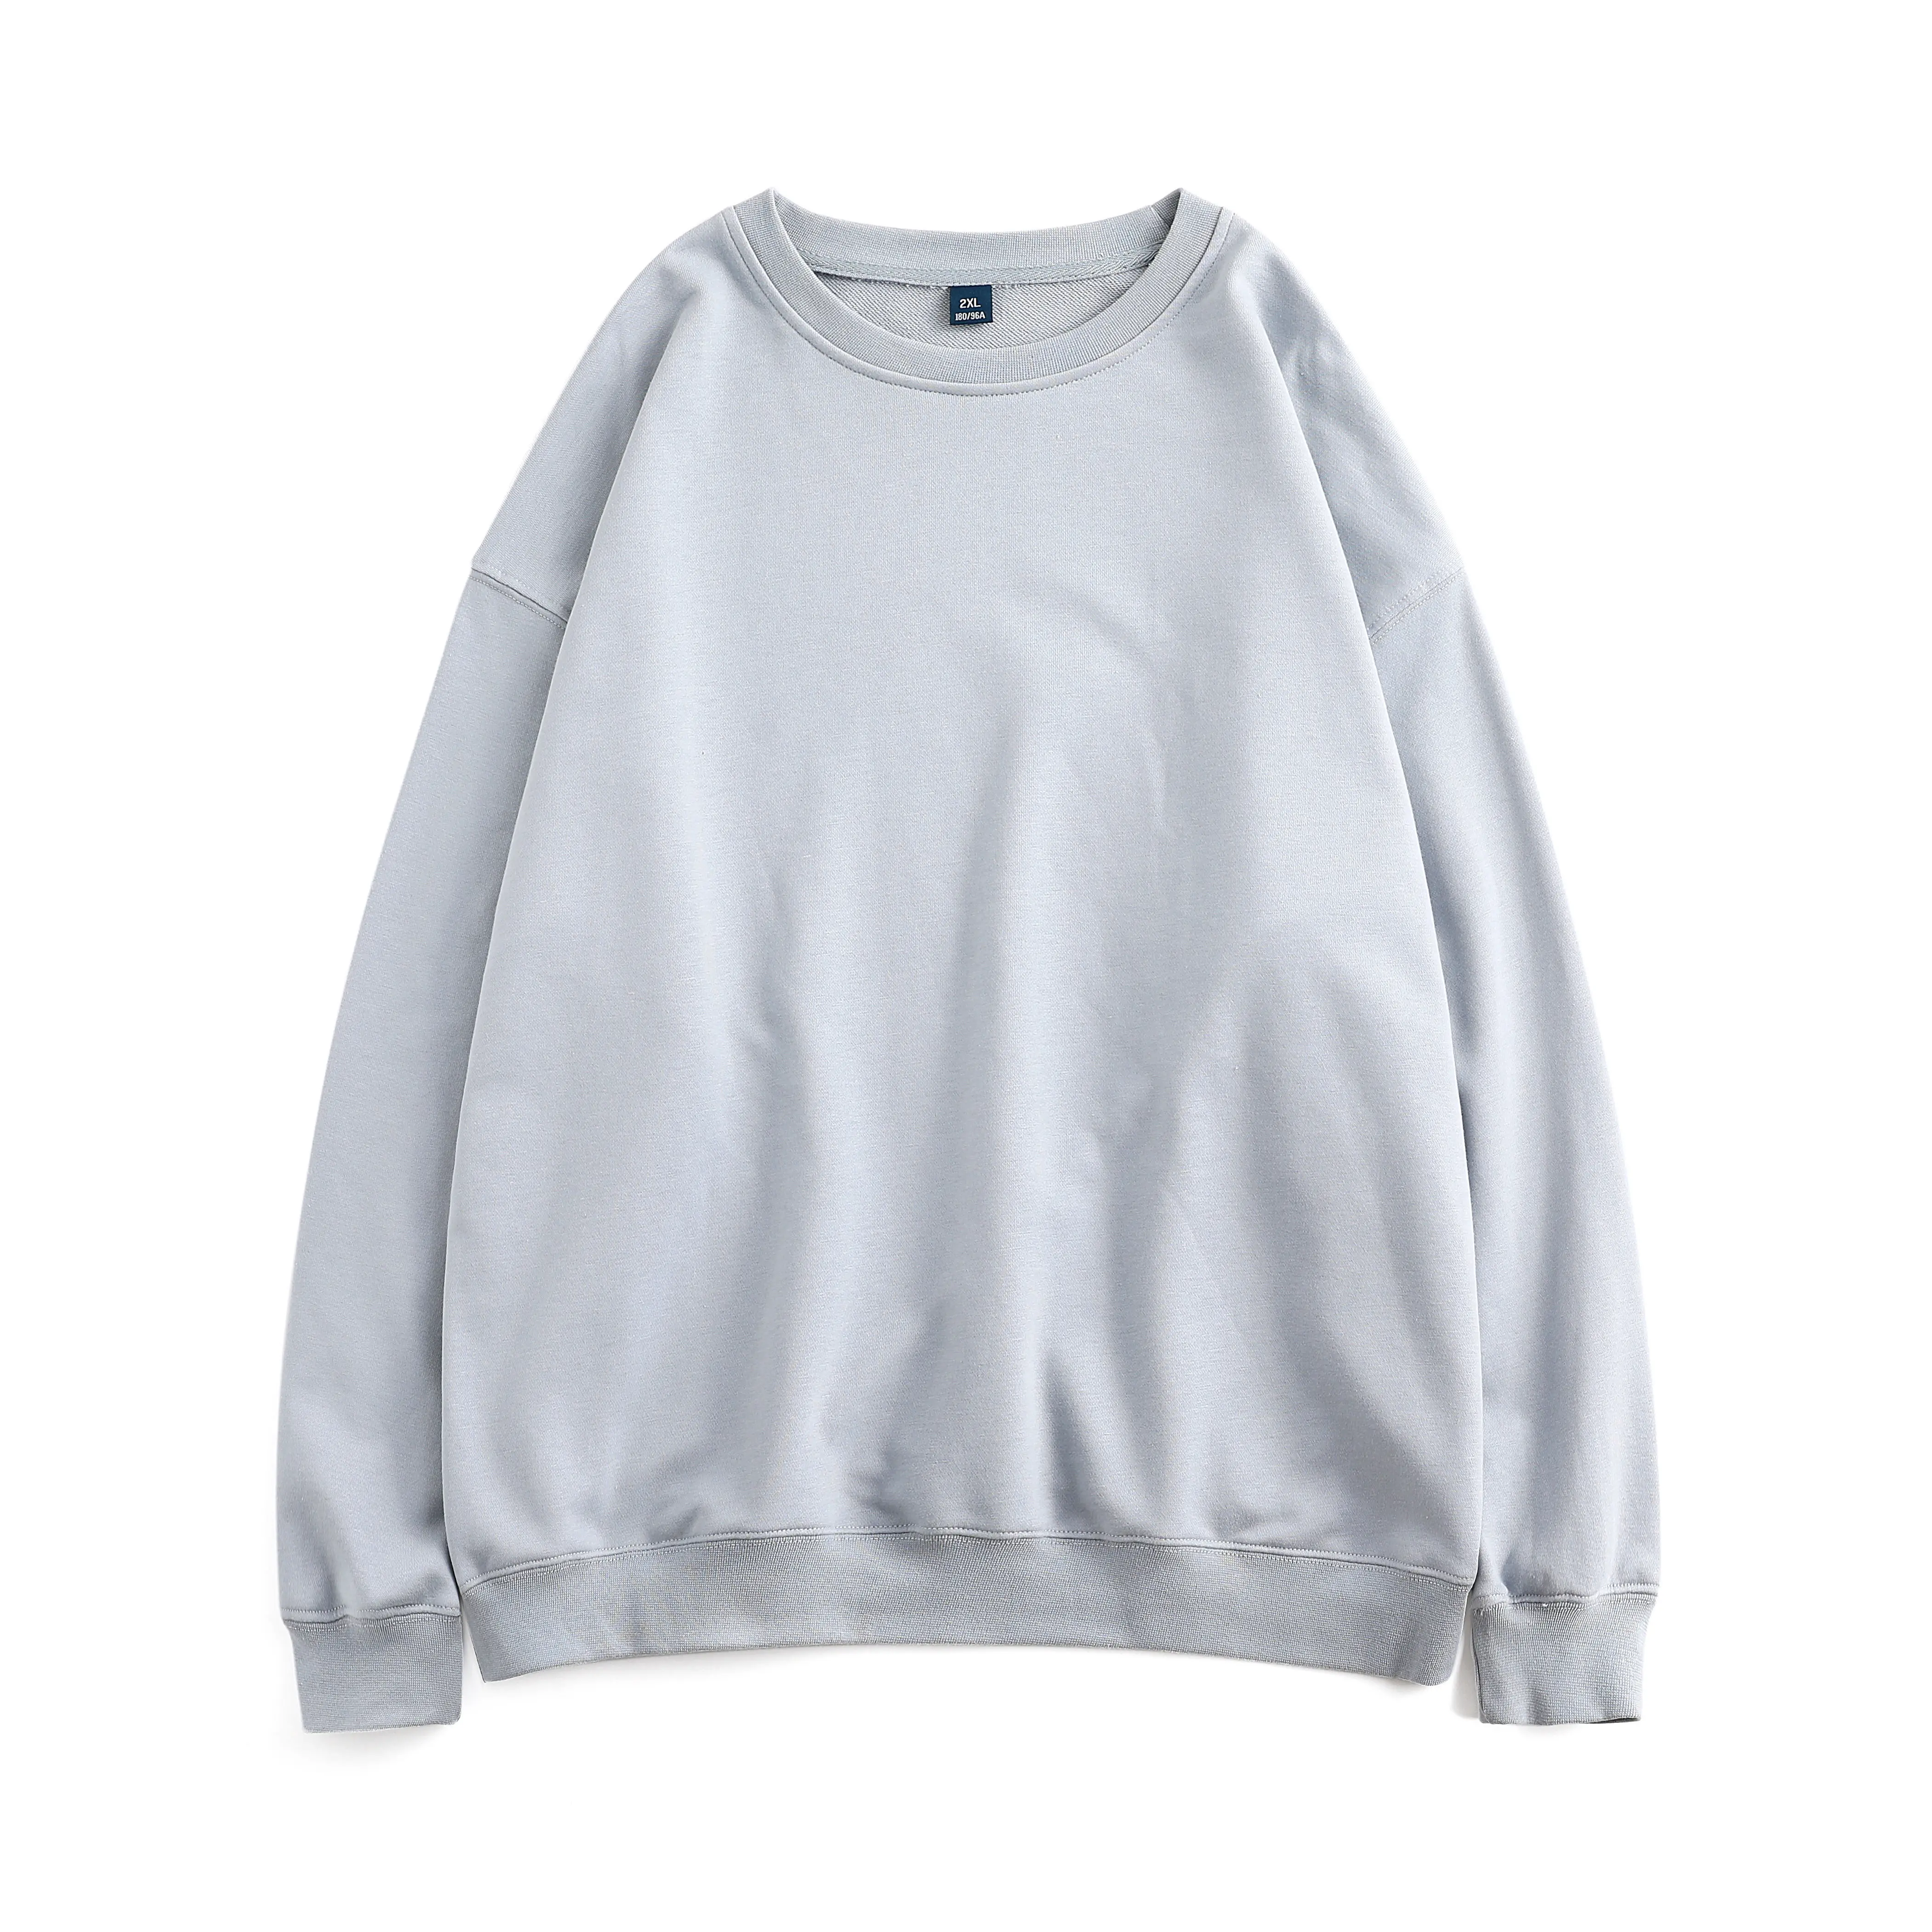 

Custom Oversized Crewneck Oem Sweatshirt in Bulk Men Wholesale Pullover Blank Hoodie Sweatshirt, 25 colors